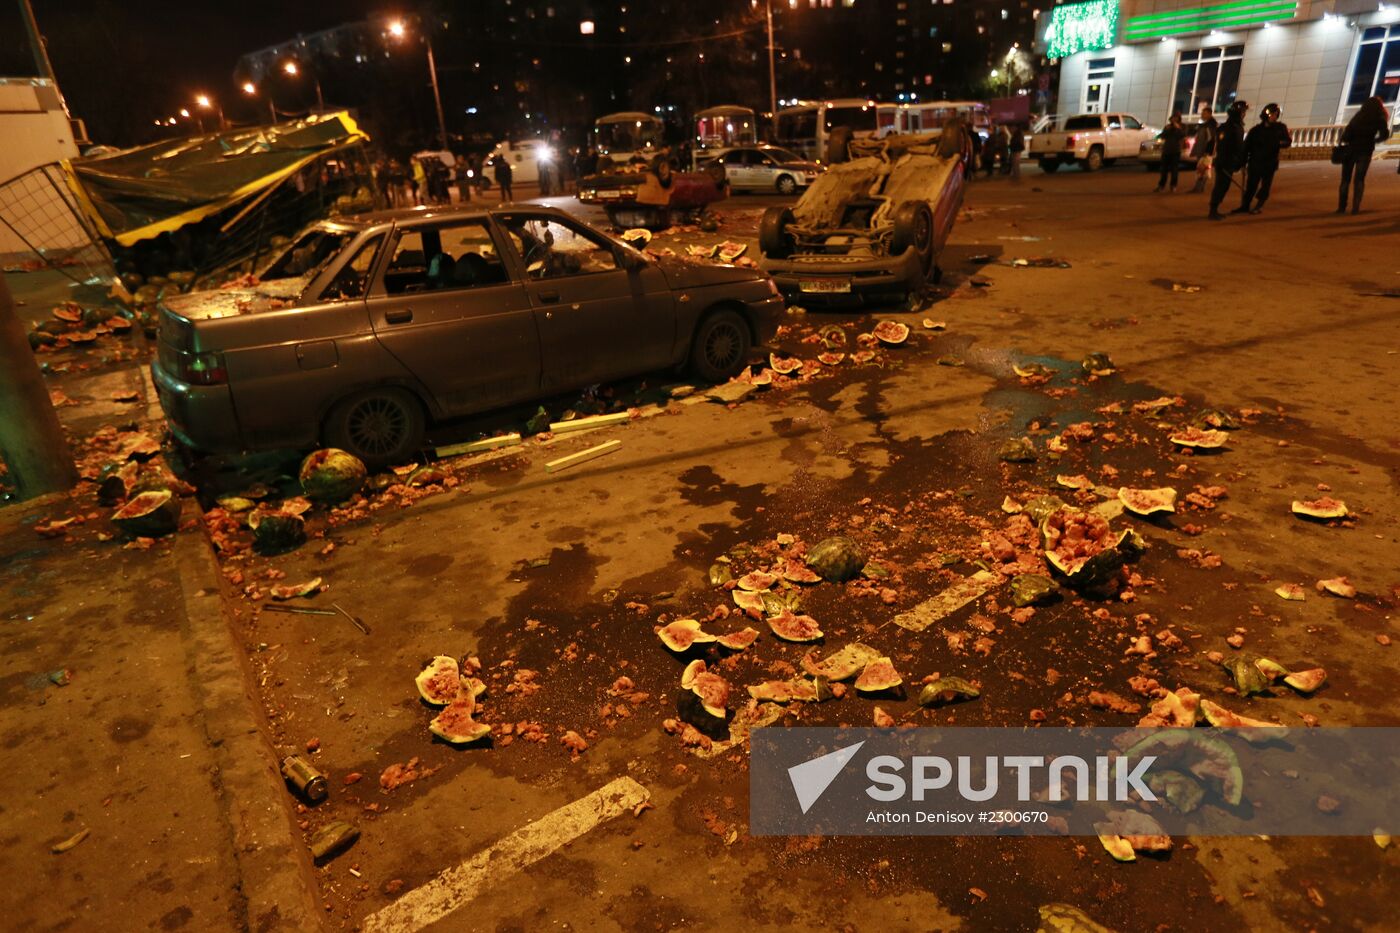 Mass disturbances in Moscow's Biryulevo district